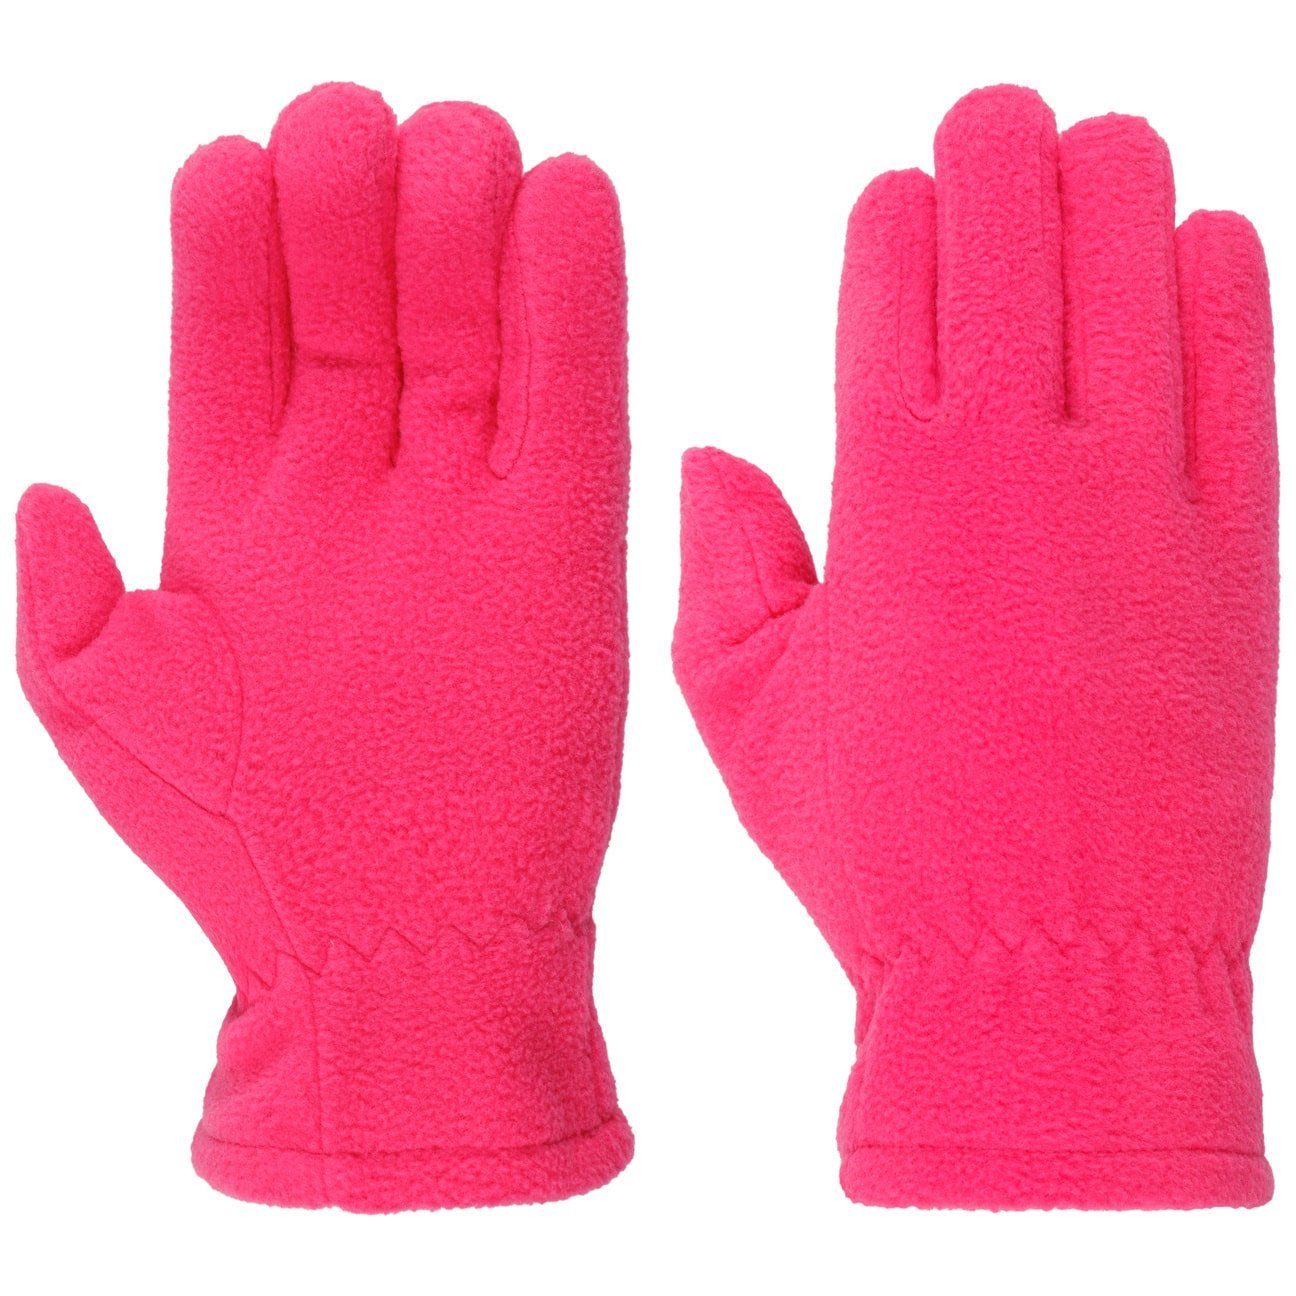 Fleecehandschuhe Fingerhandschuhe pink Fiebig